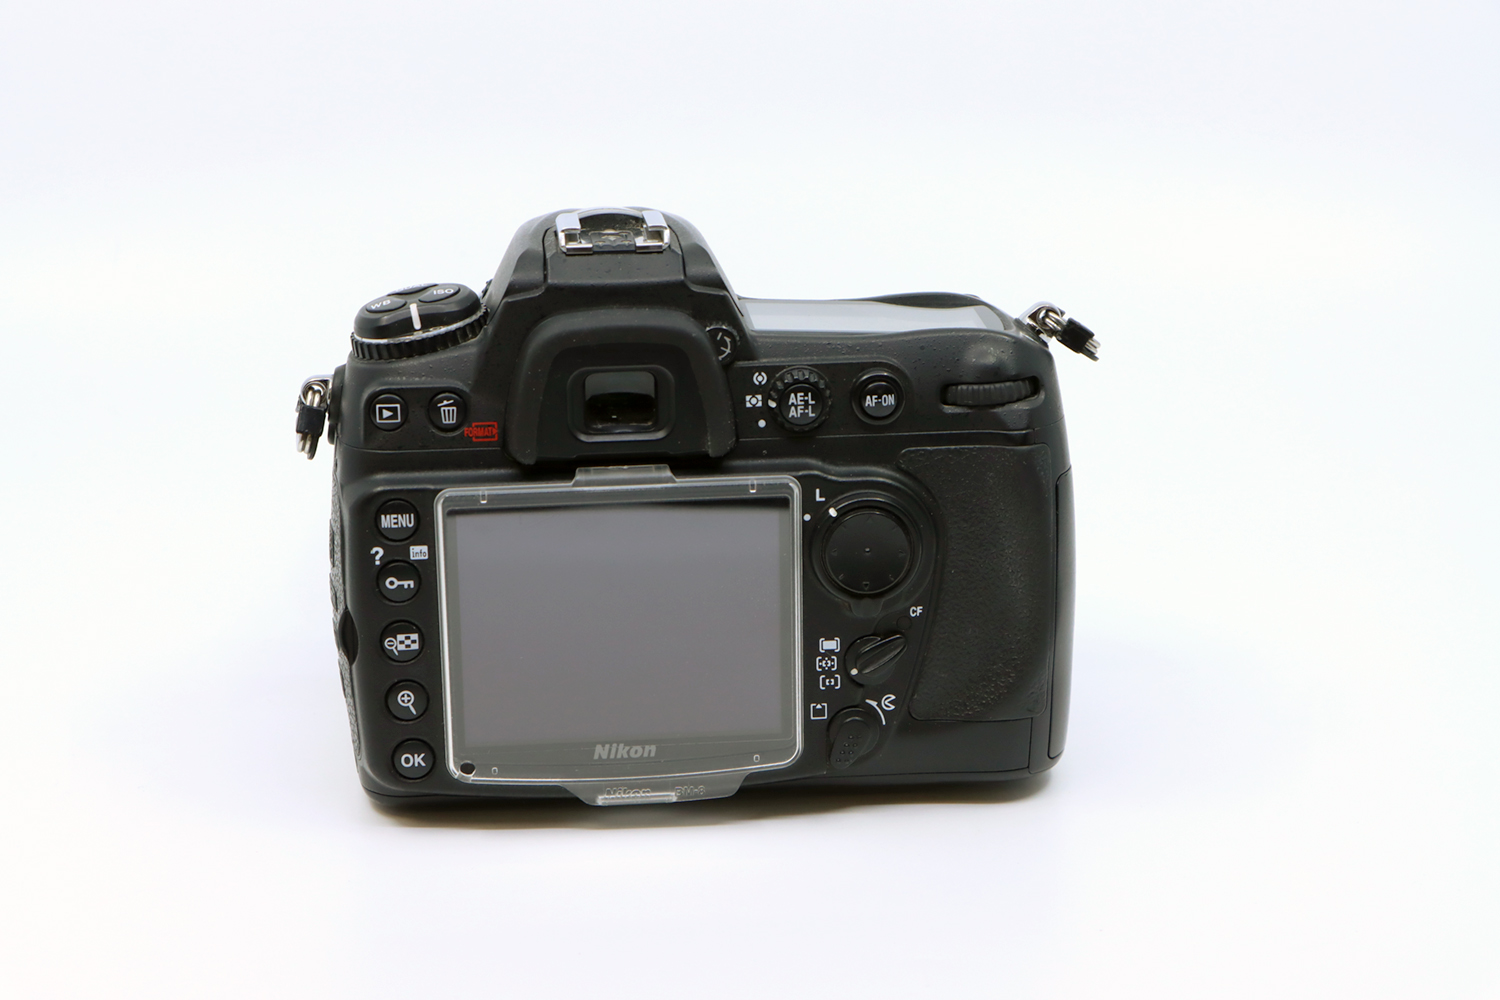 Nikon D300 + Sigma 18-200mm | IMG_6161.JPG